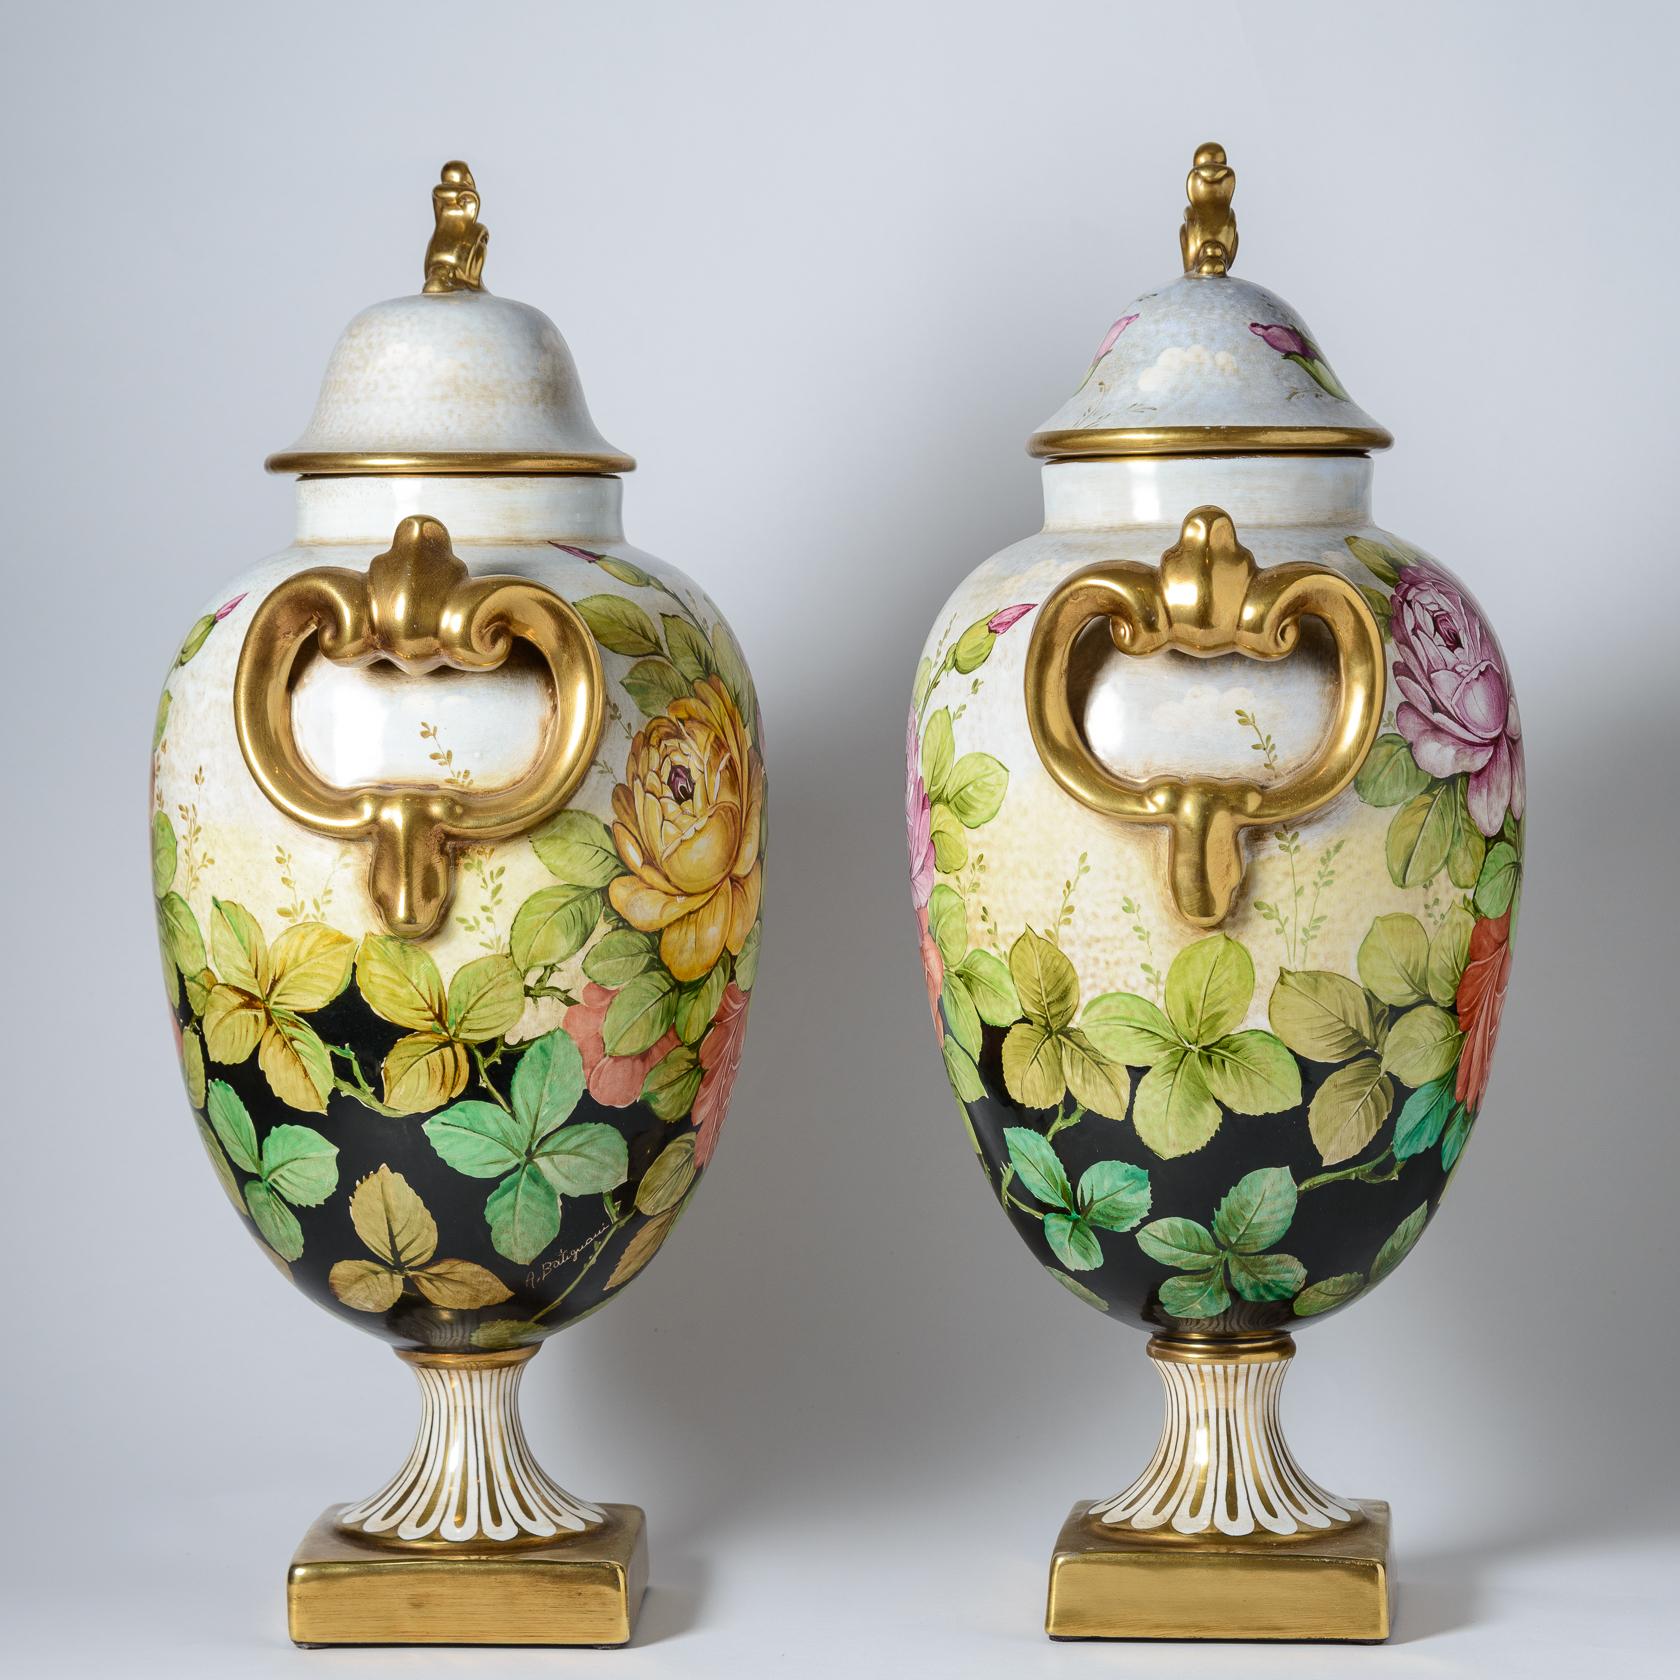 Ein Paar hoher, lebendiger italienischer Vasen mit schönen Deckeln und einzigartigen Endstücken mit mehrfarbigen Rosen. Auch dieses Paar ist mit traditionellen vergoldeten Streifen versehen. Vom Künstler signiert und mit vielen Details in den